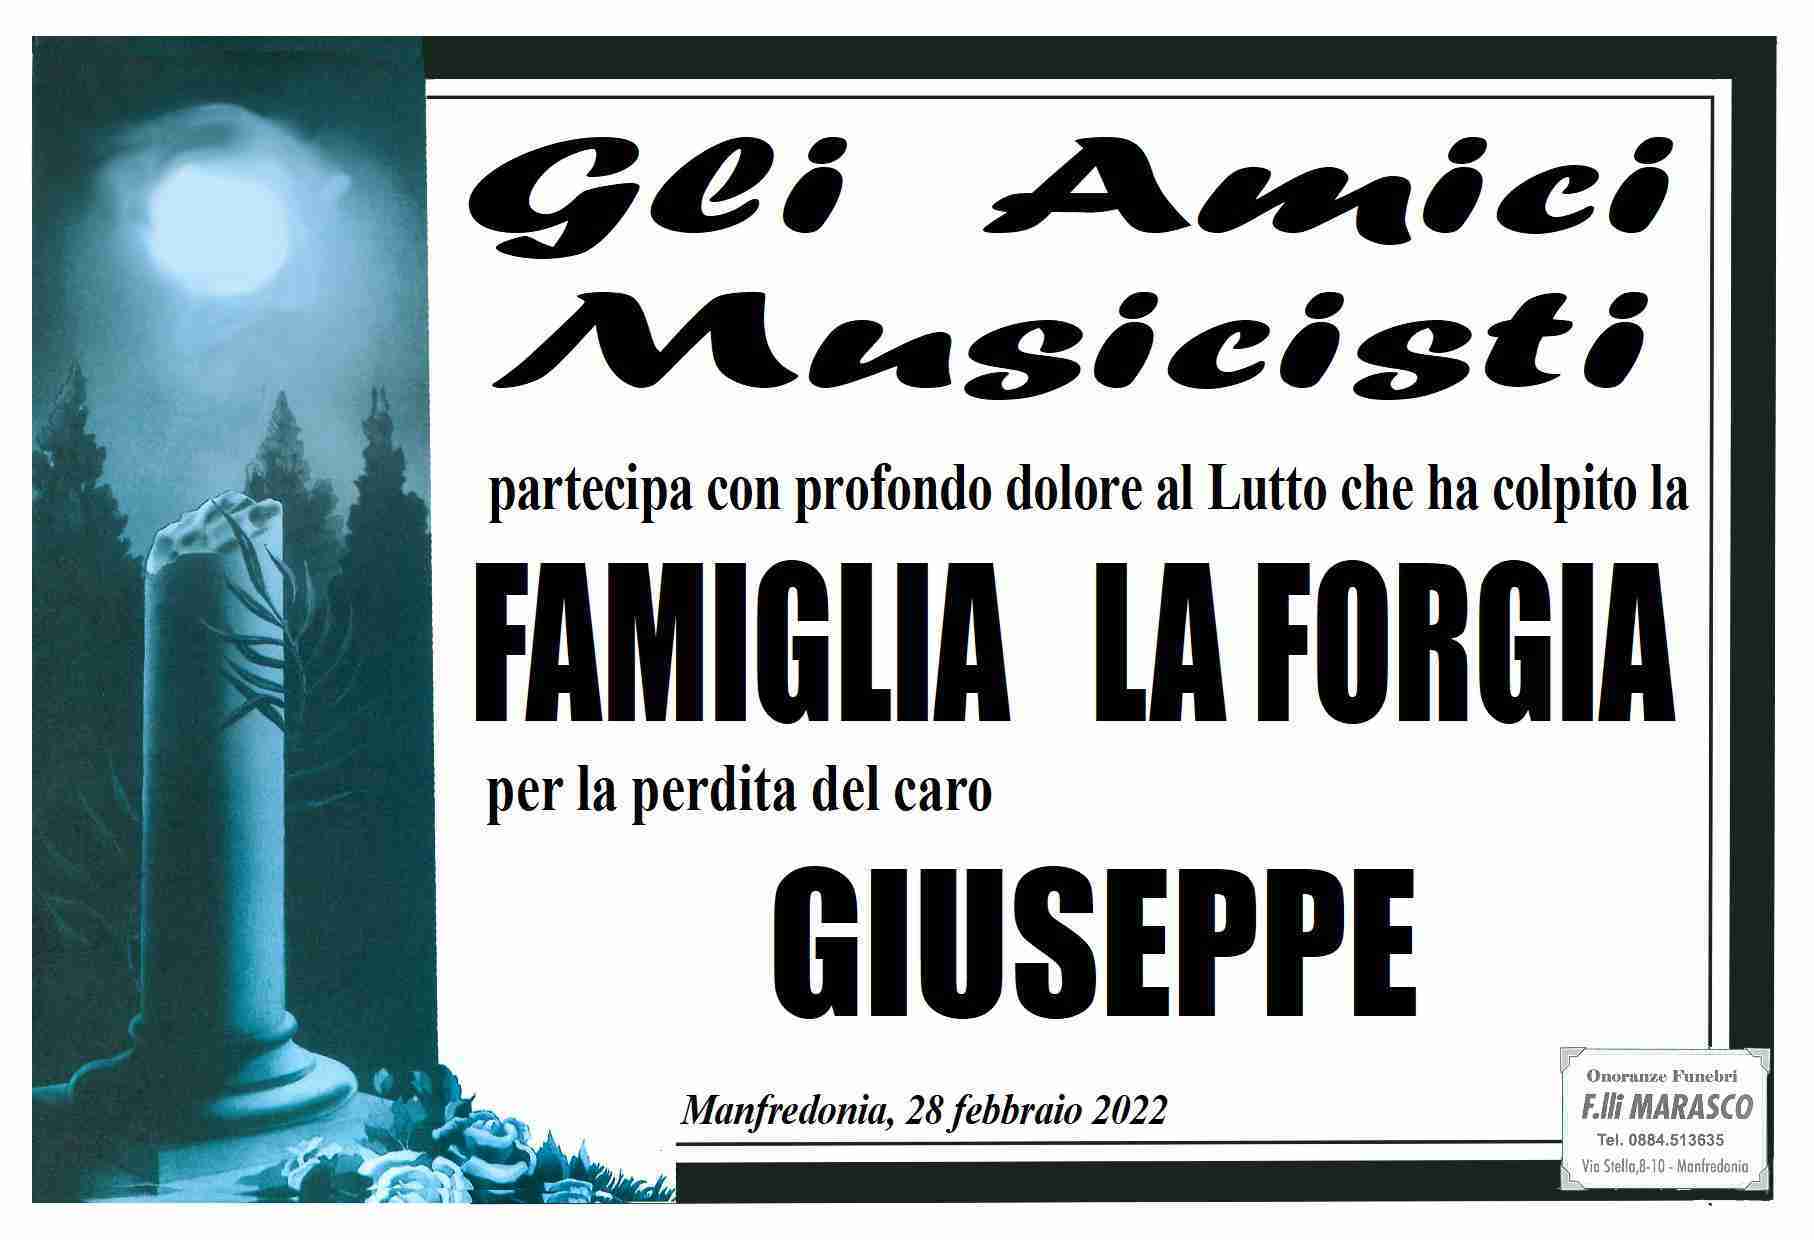 Giuseppe La Forgia